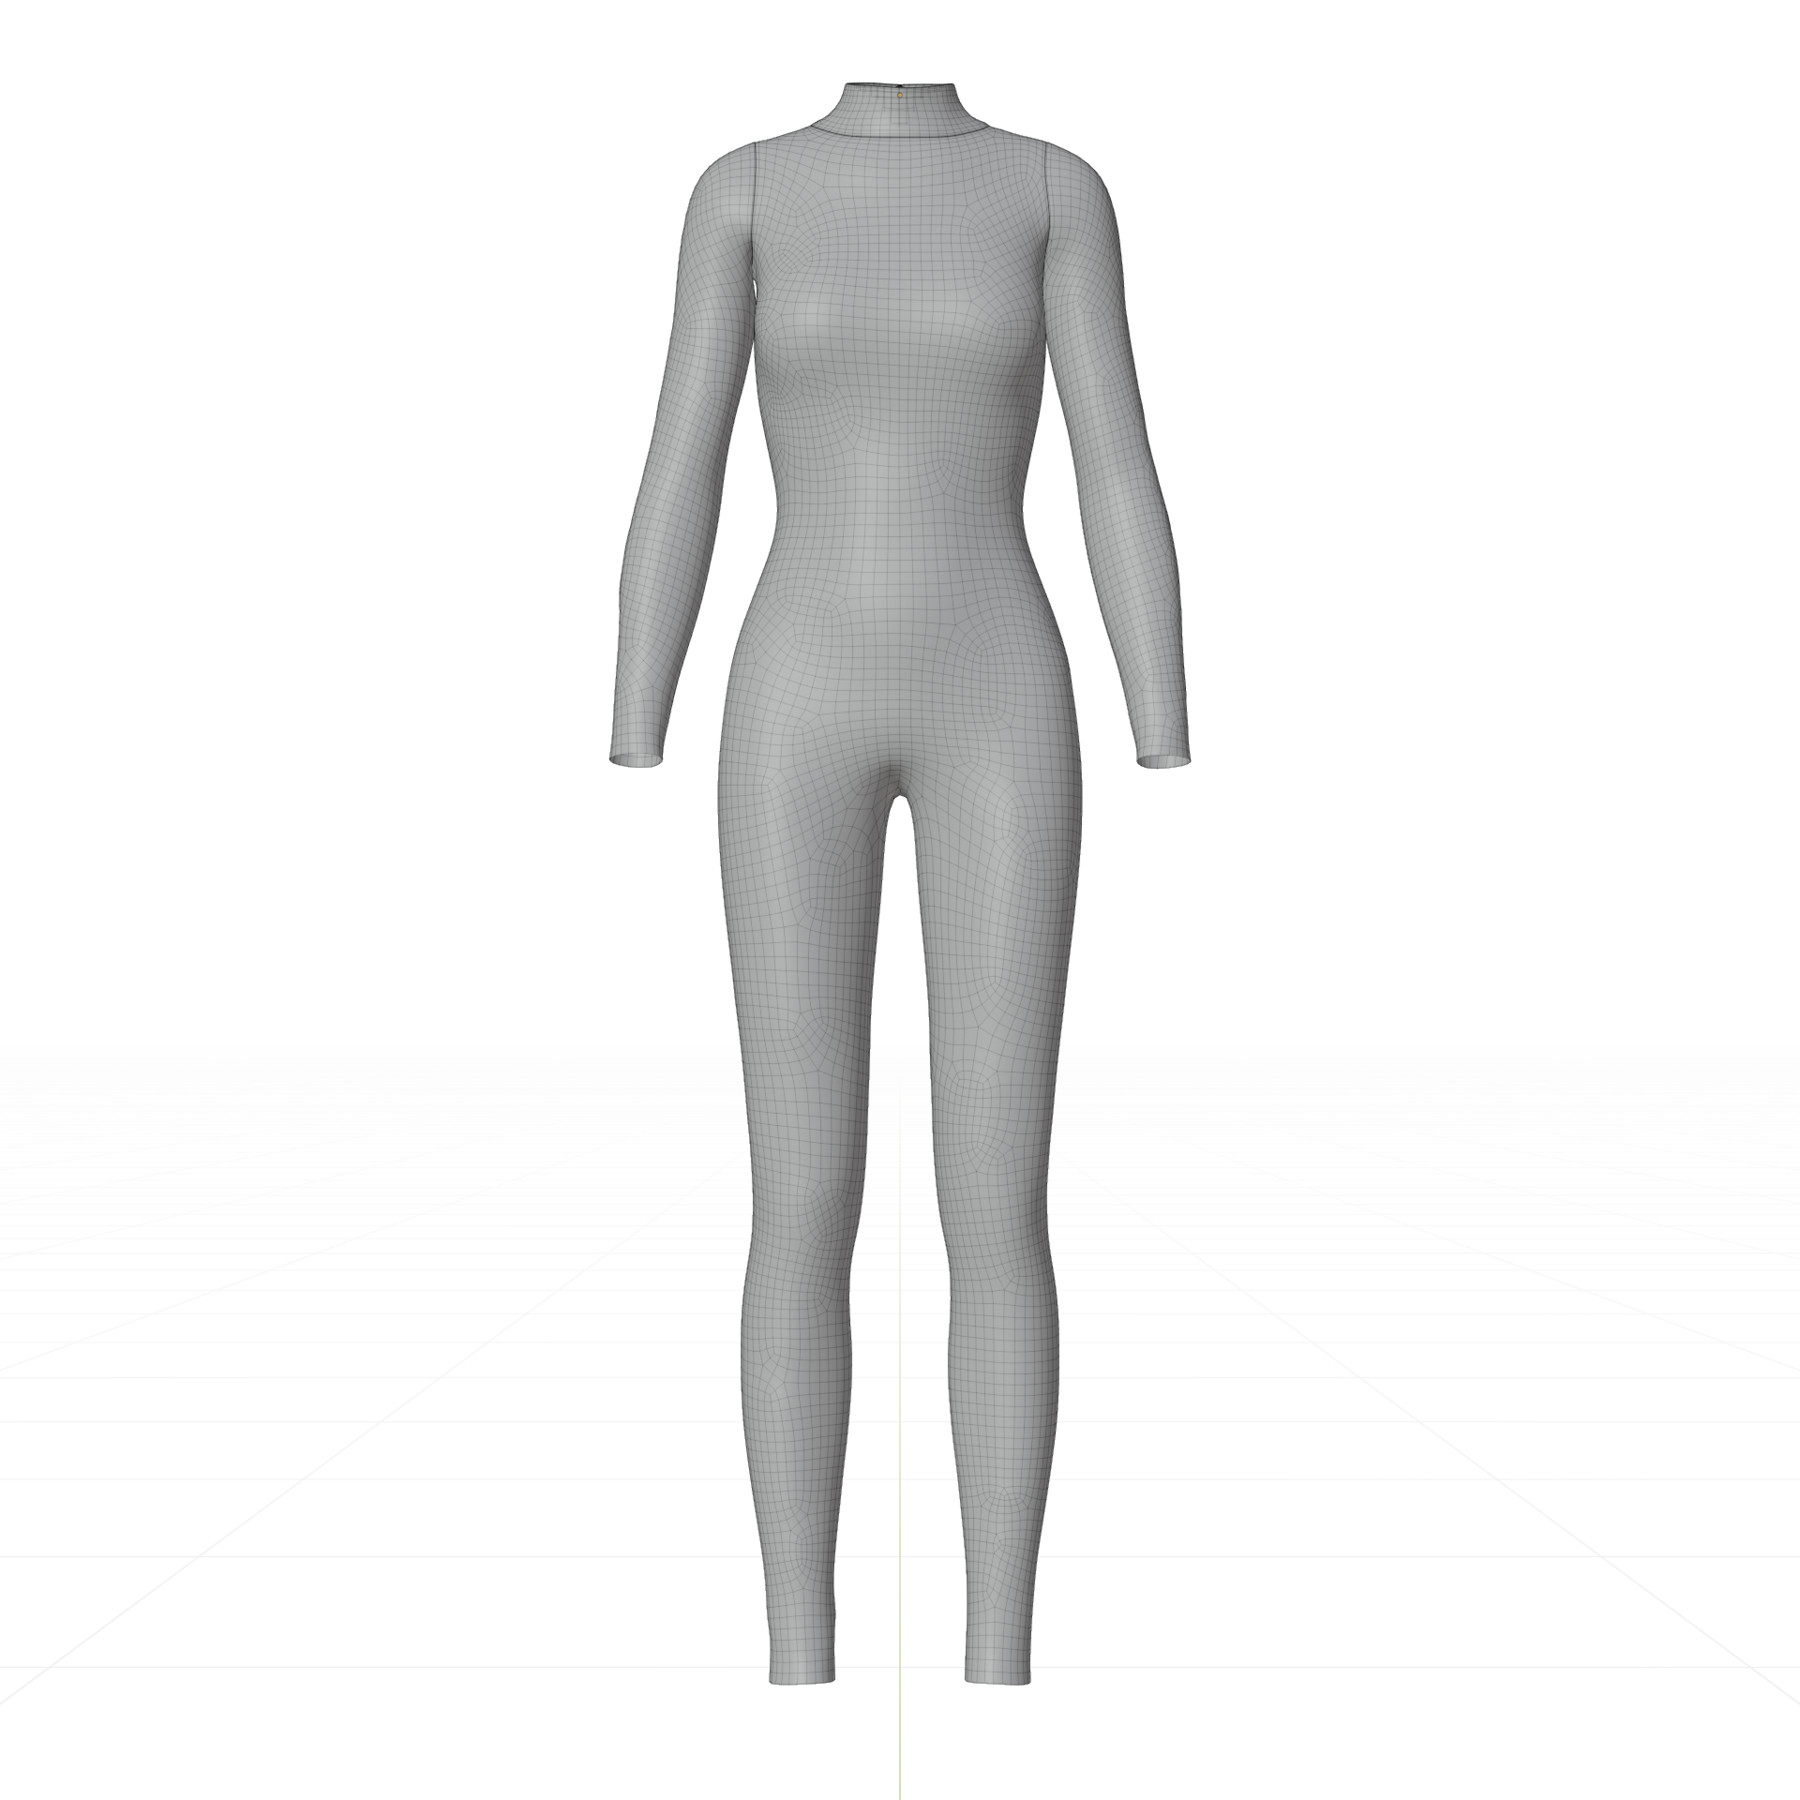 Artstation Female Full Bodysuit 3d Model Resources